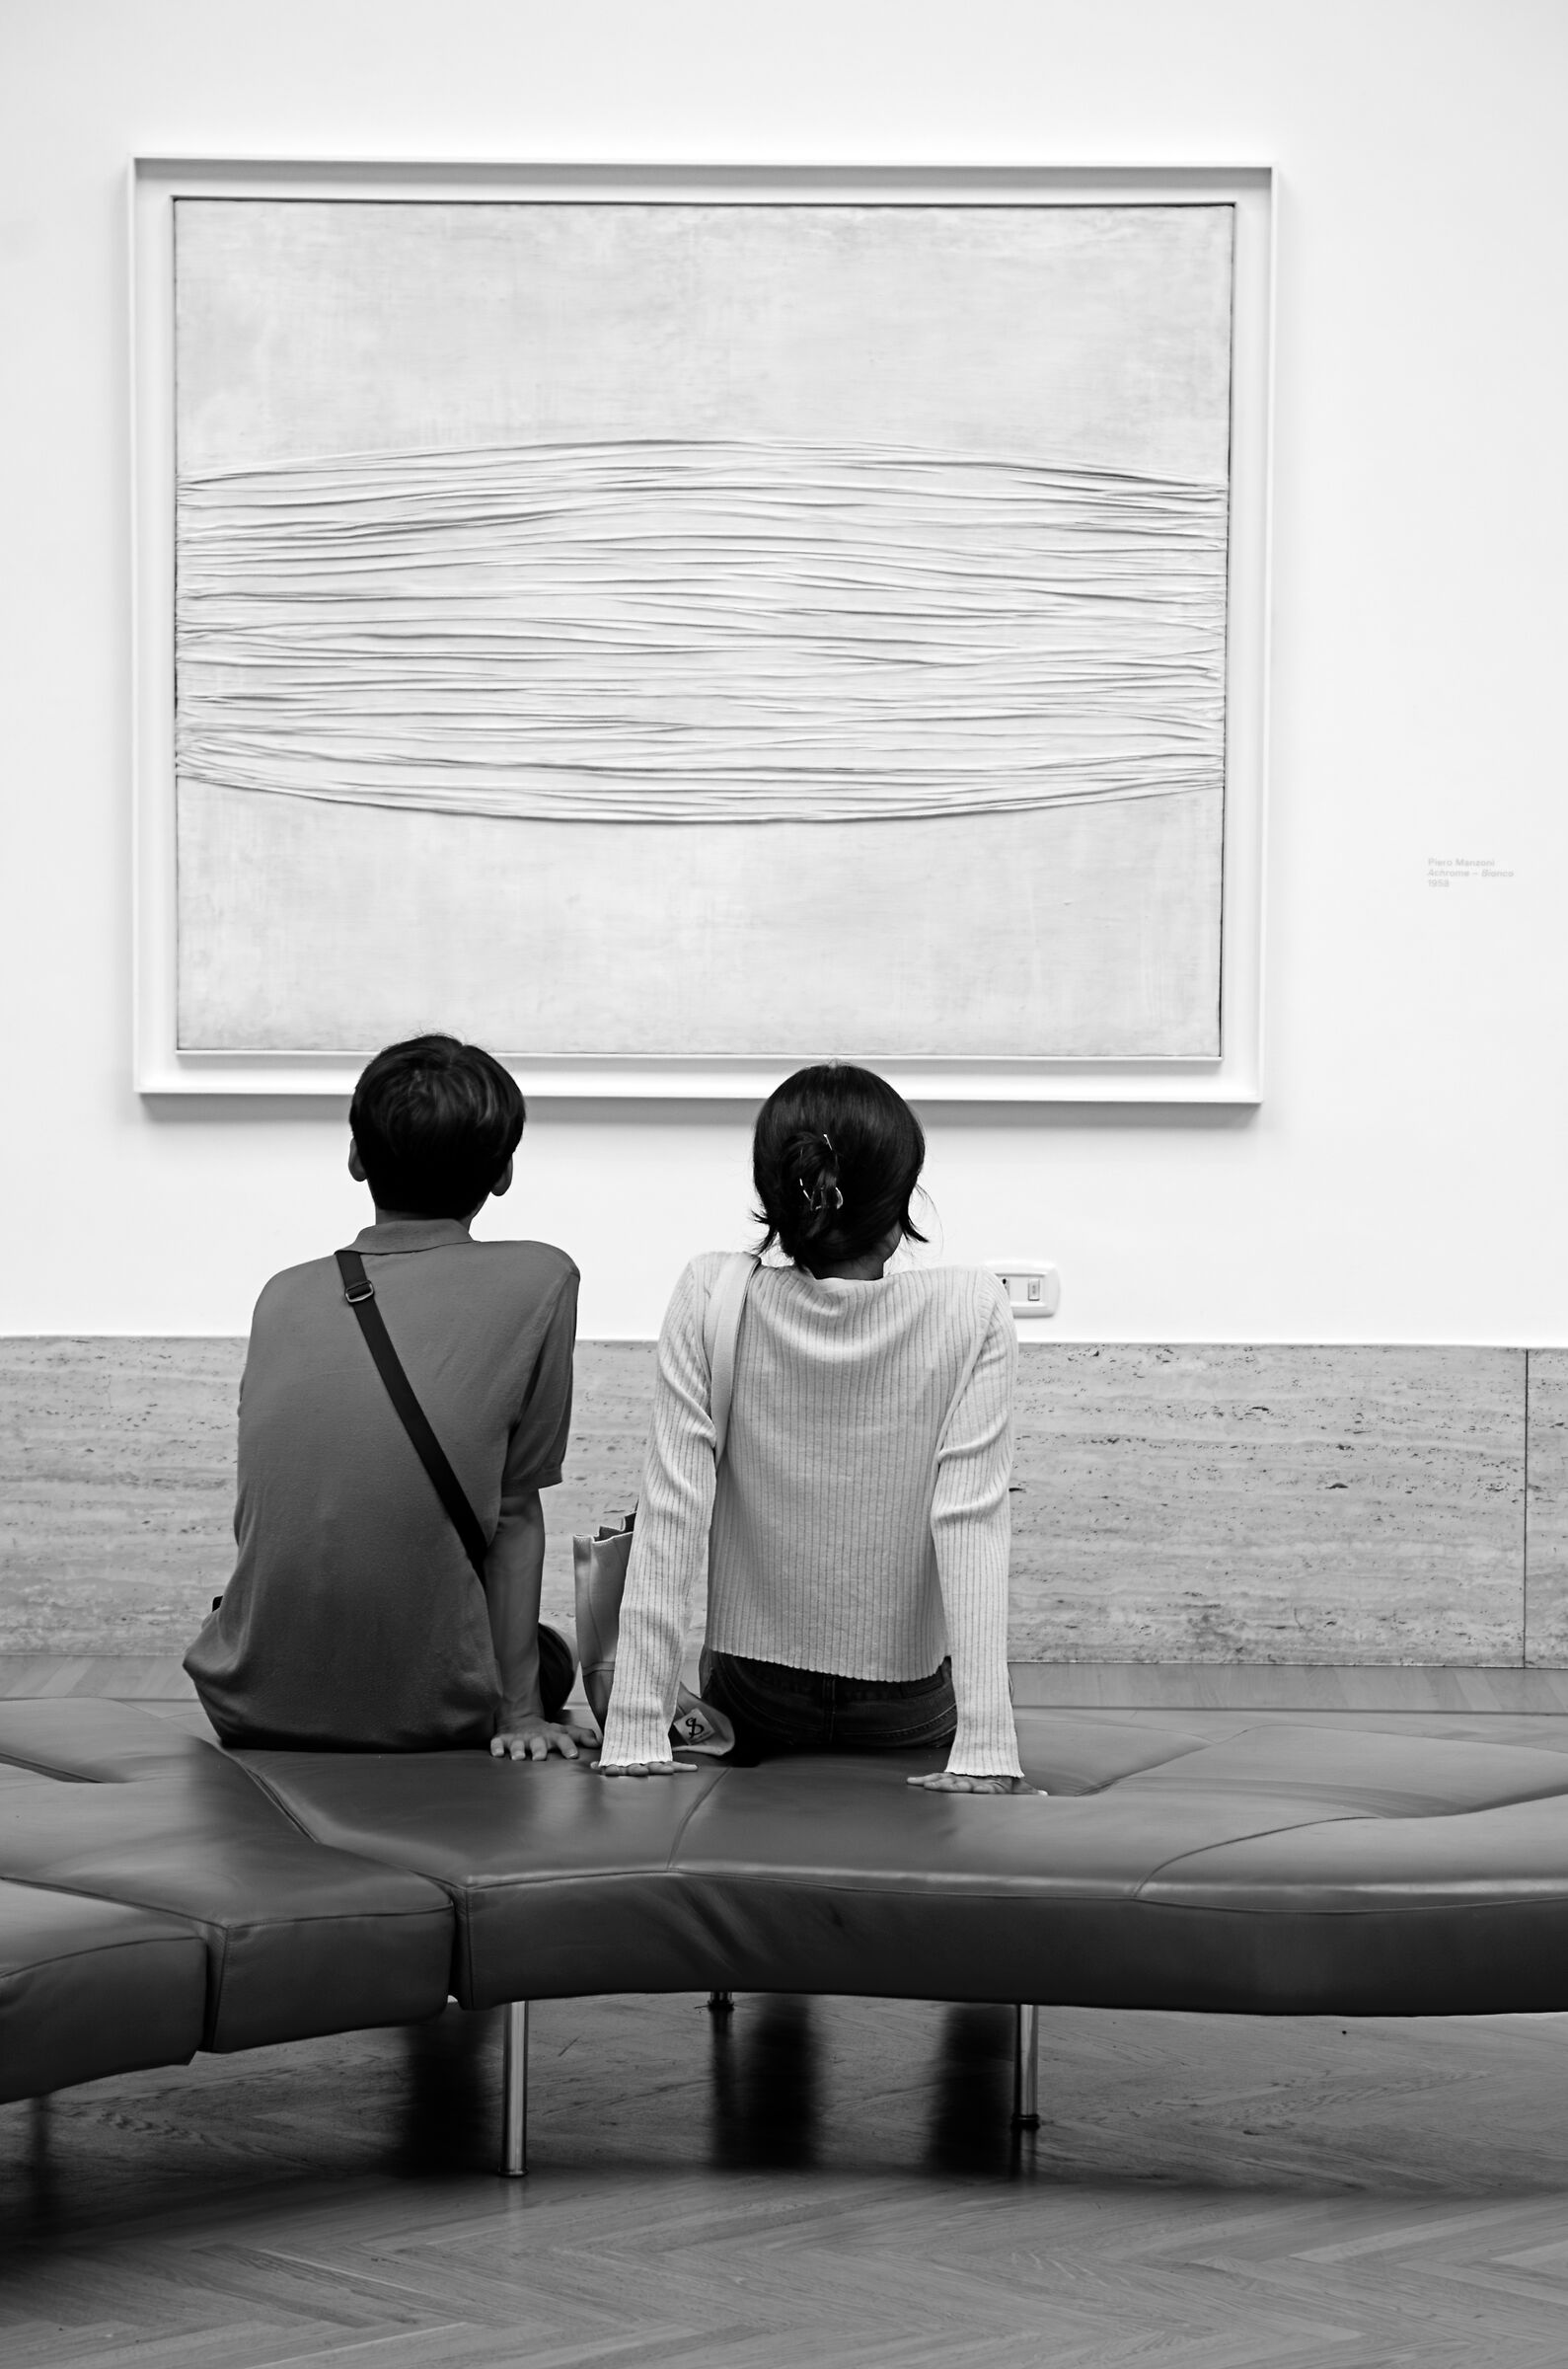 The Piero Manzoni National Gallery Achrome White...